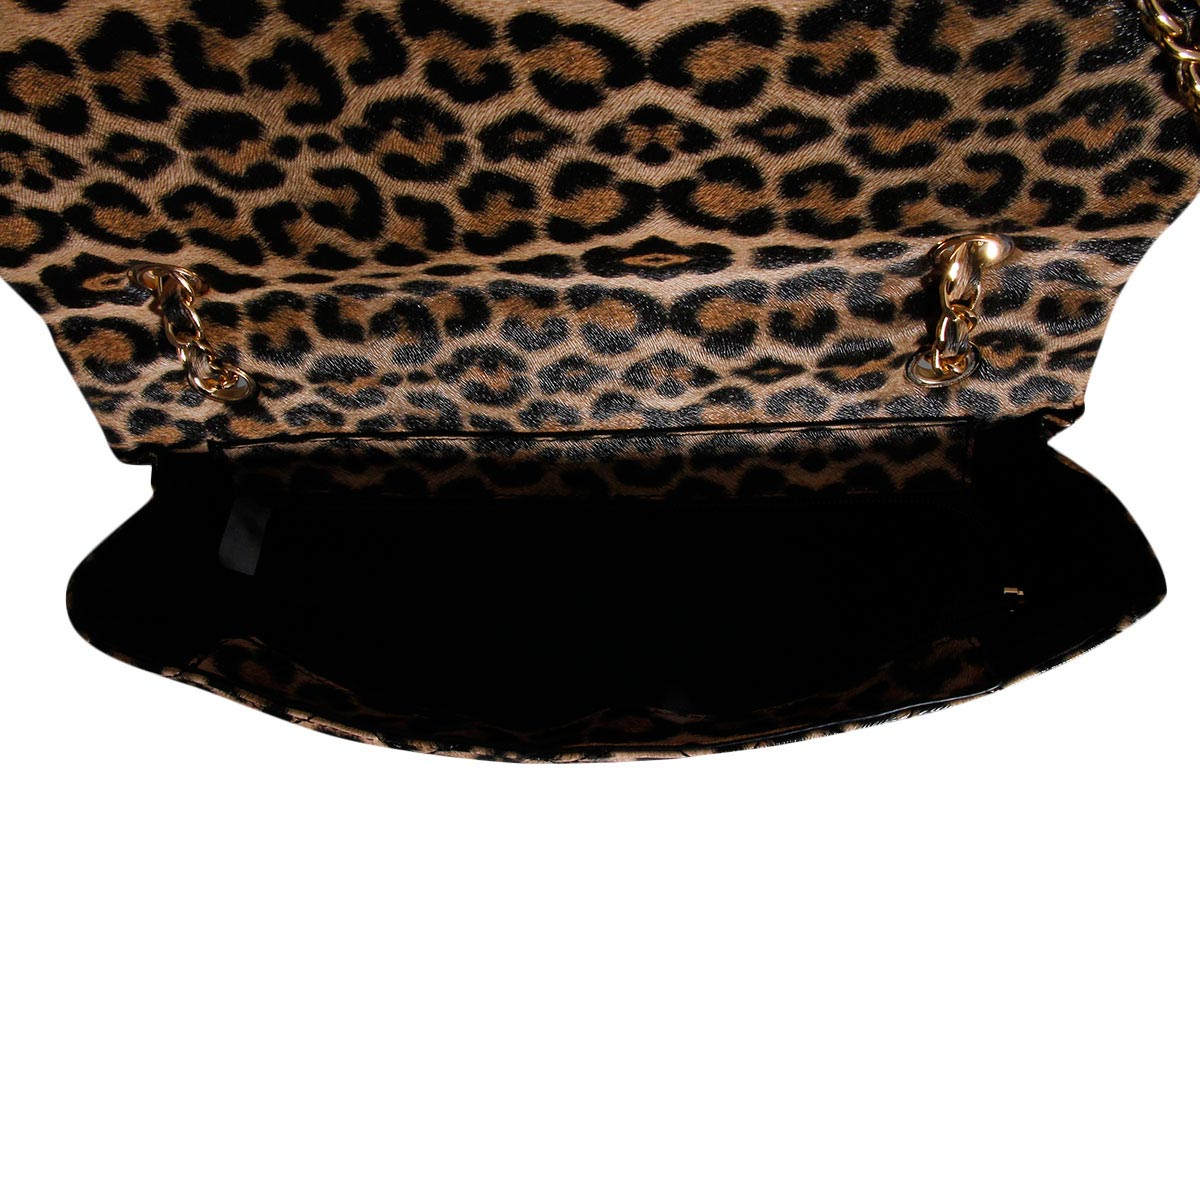 BILLION Leopard Quilted Handbag